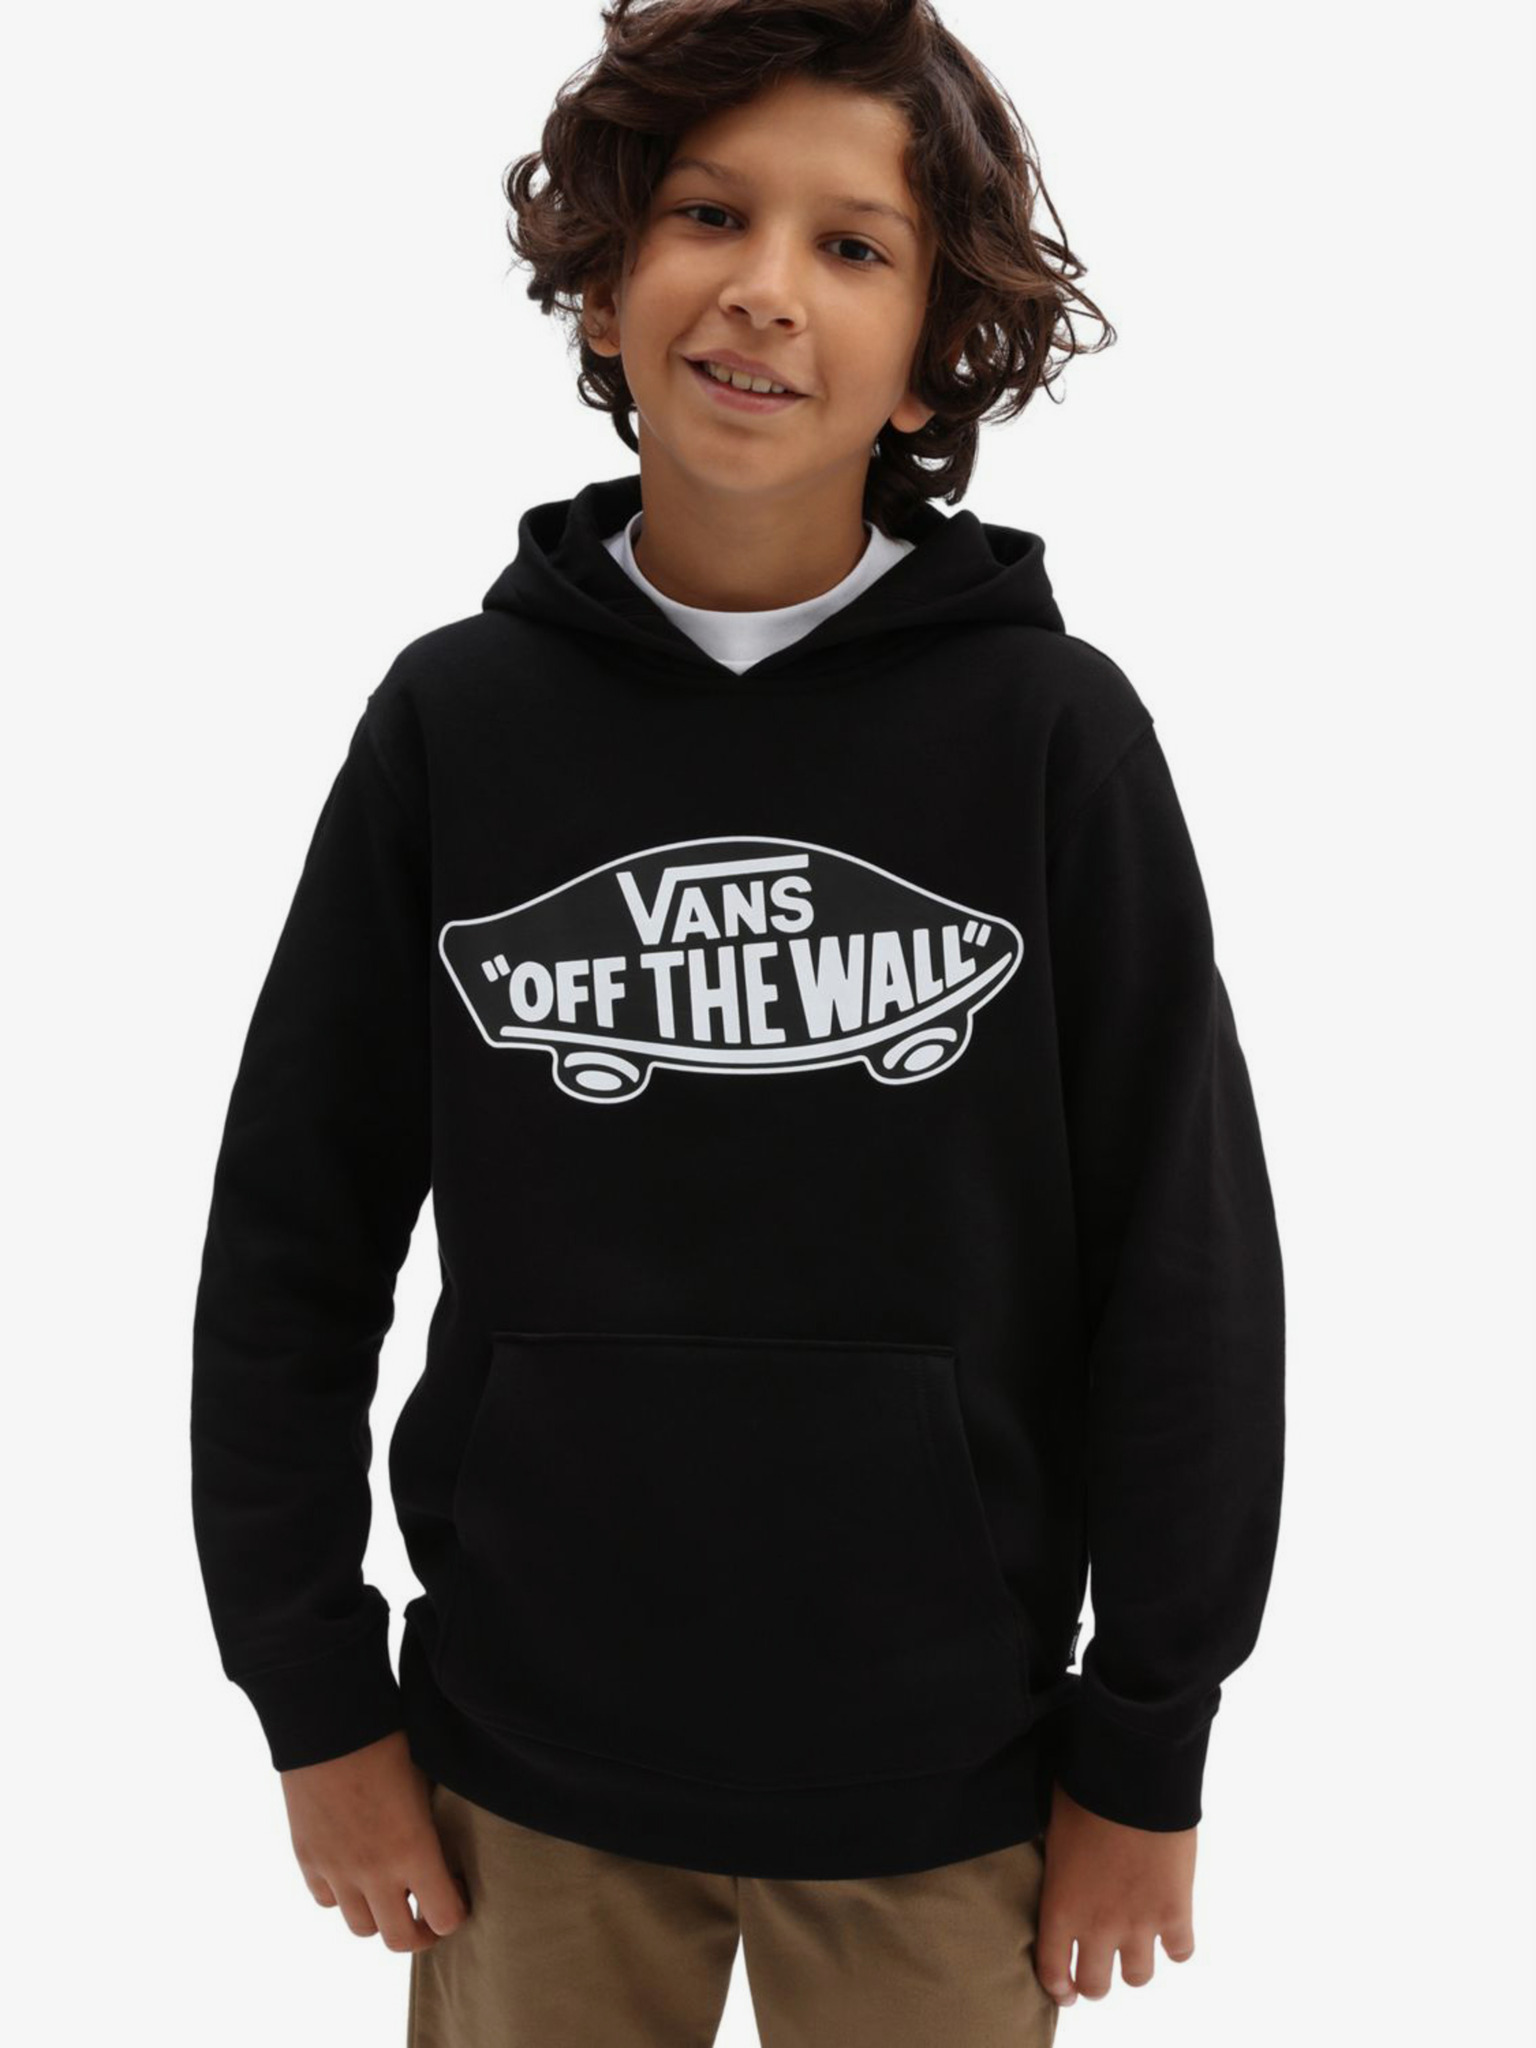 Vans - OTW Kids Sweatshirt